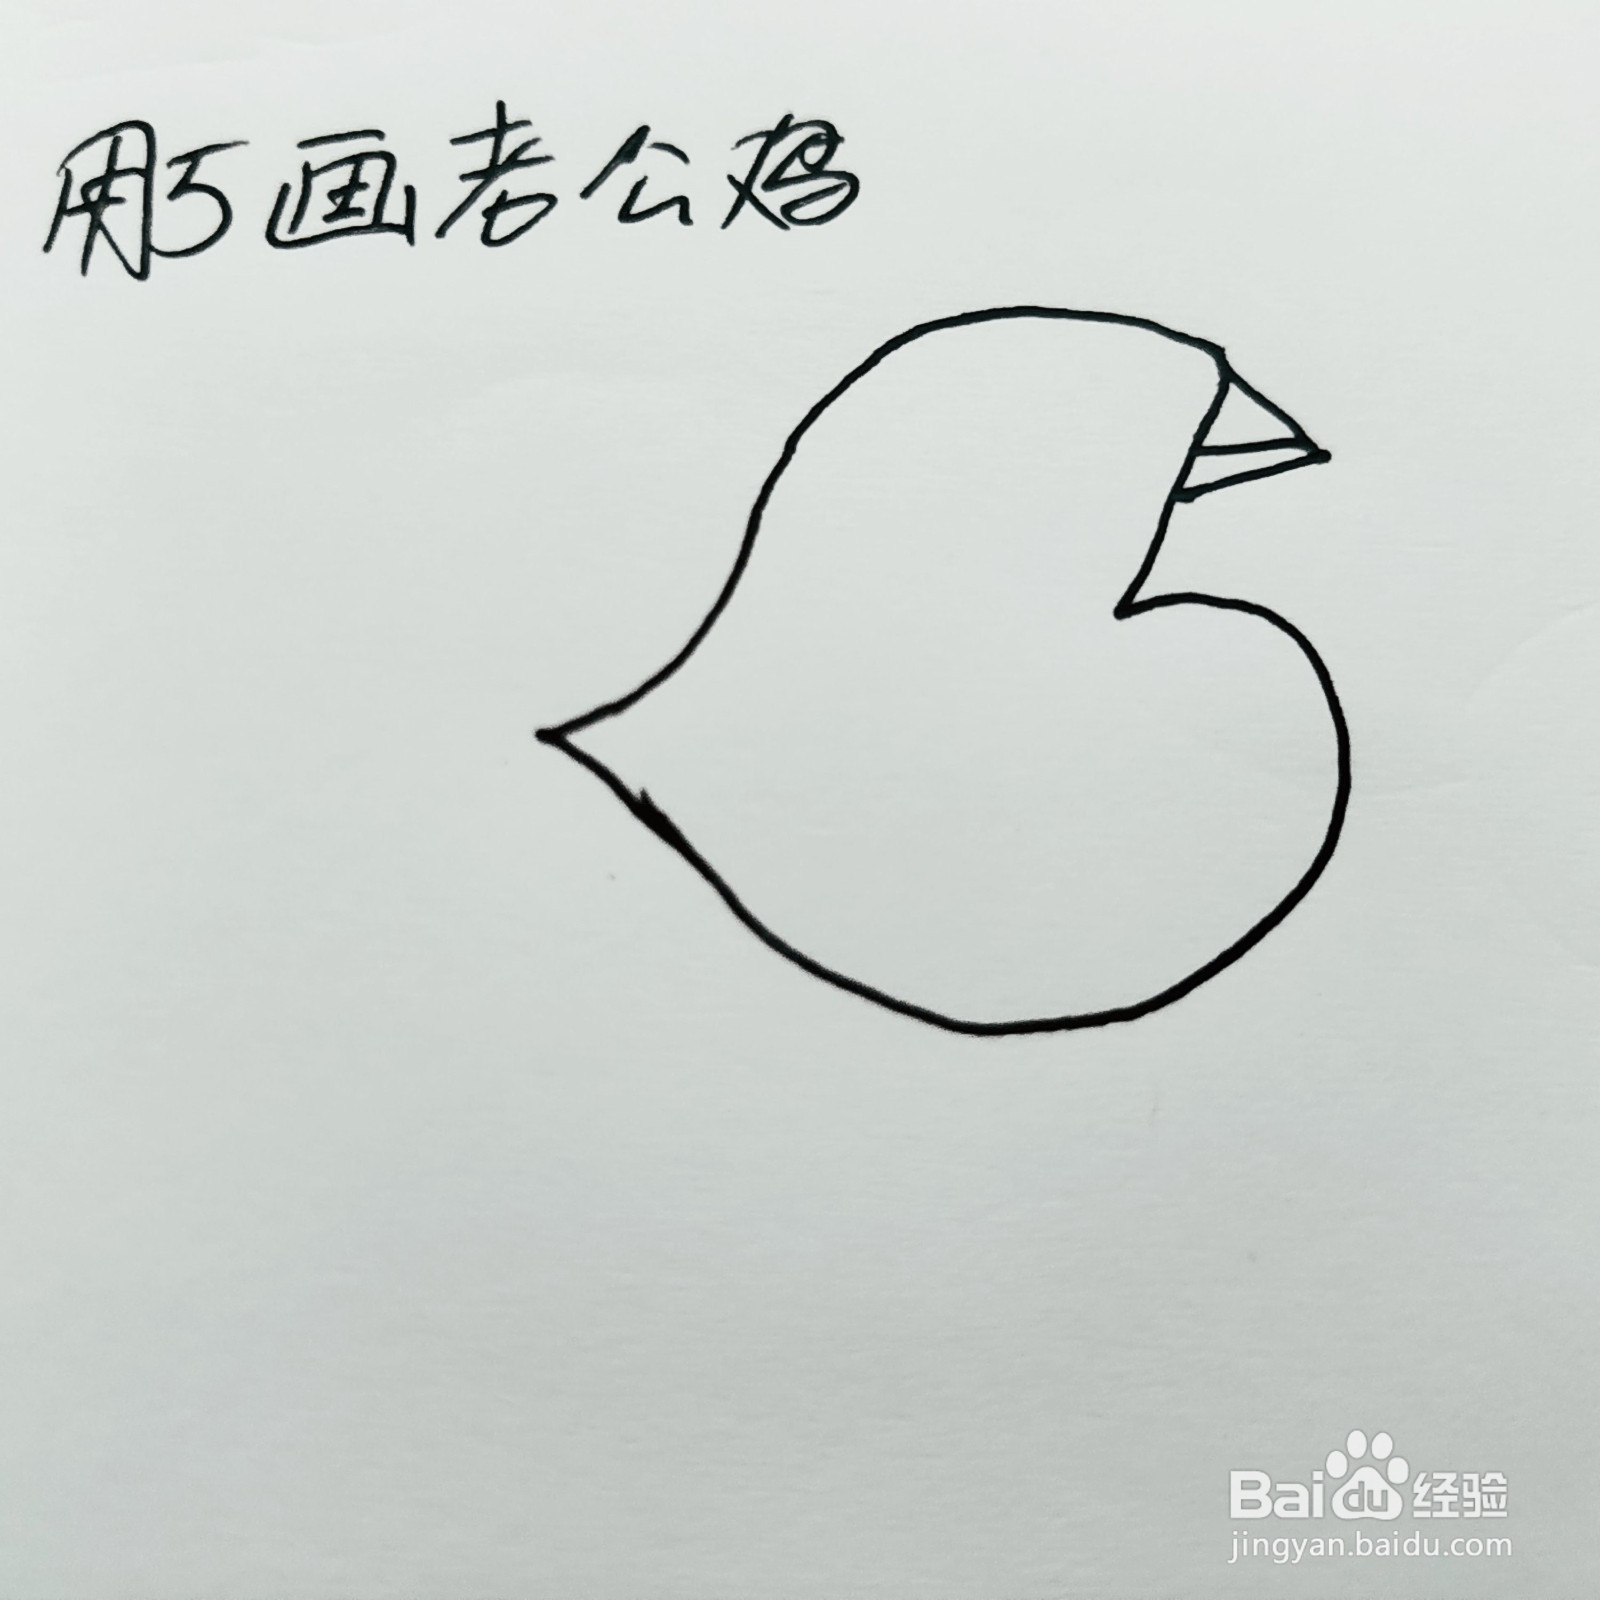 如何用数字5画一只大公鸡简笔画呢?